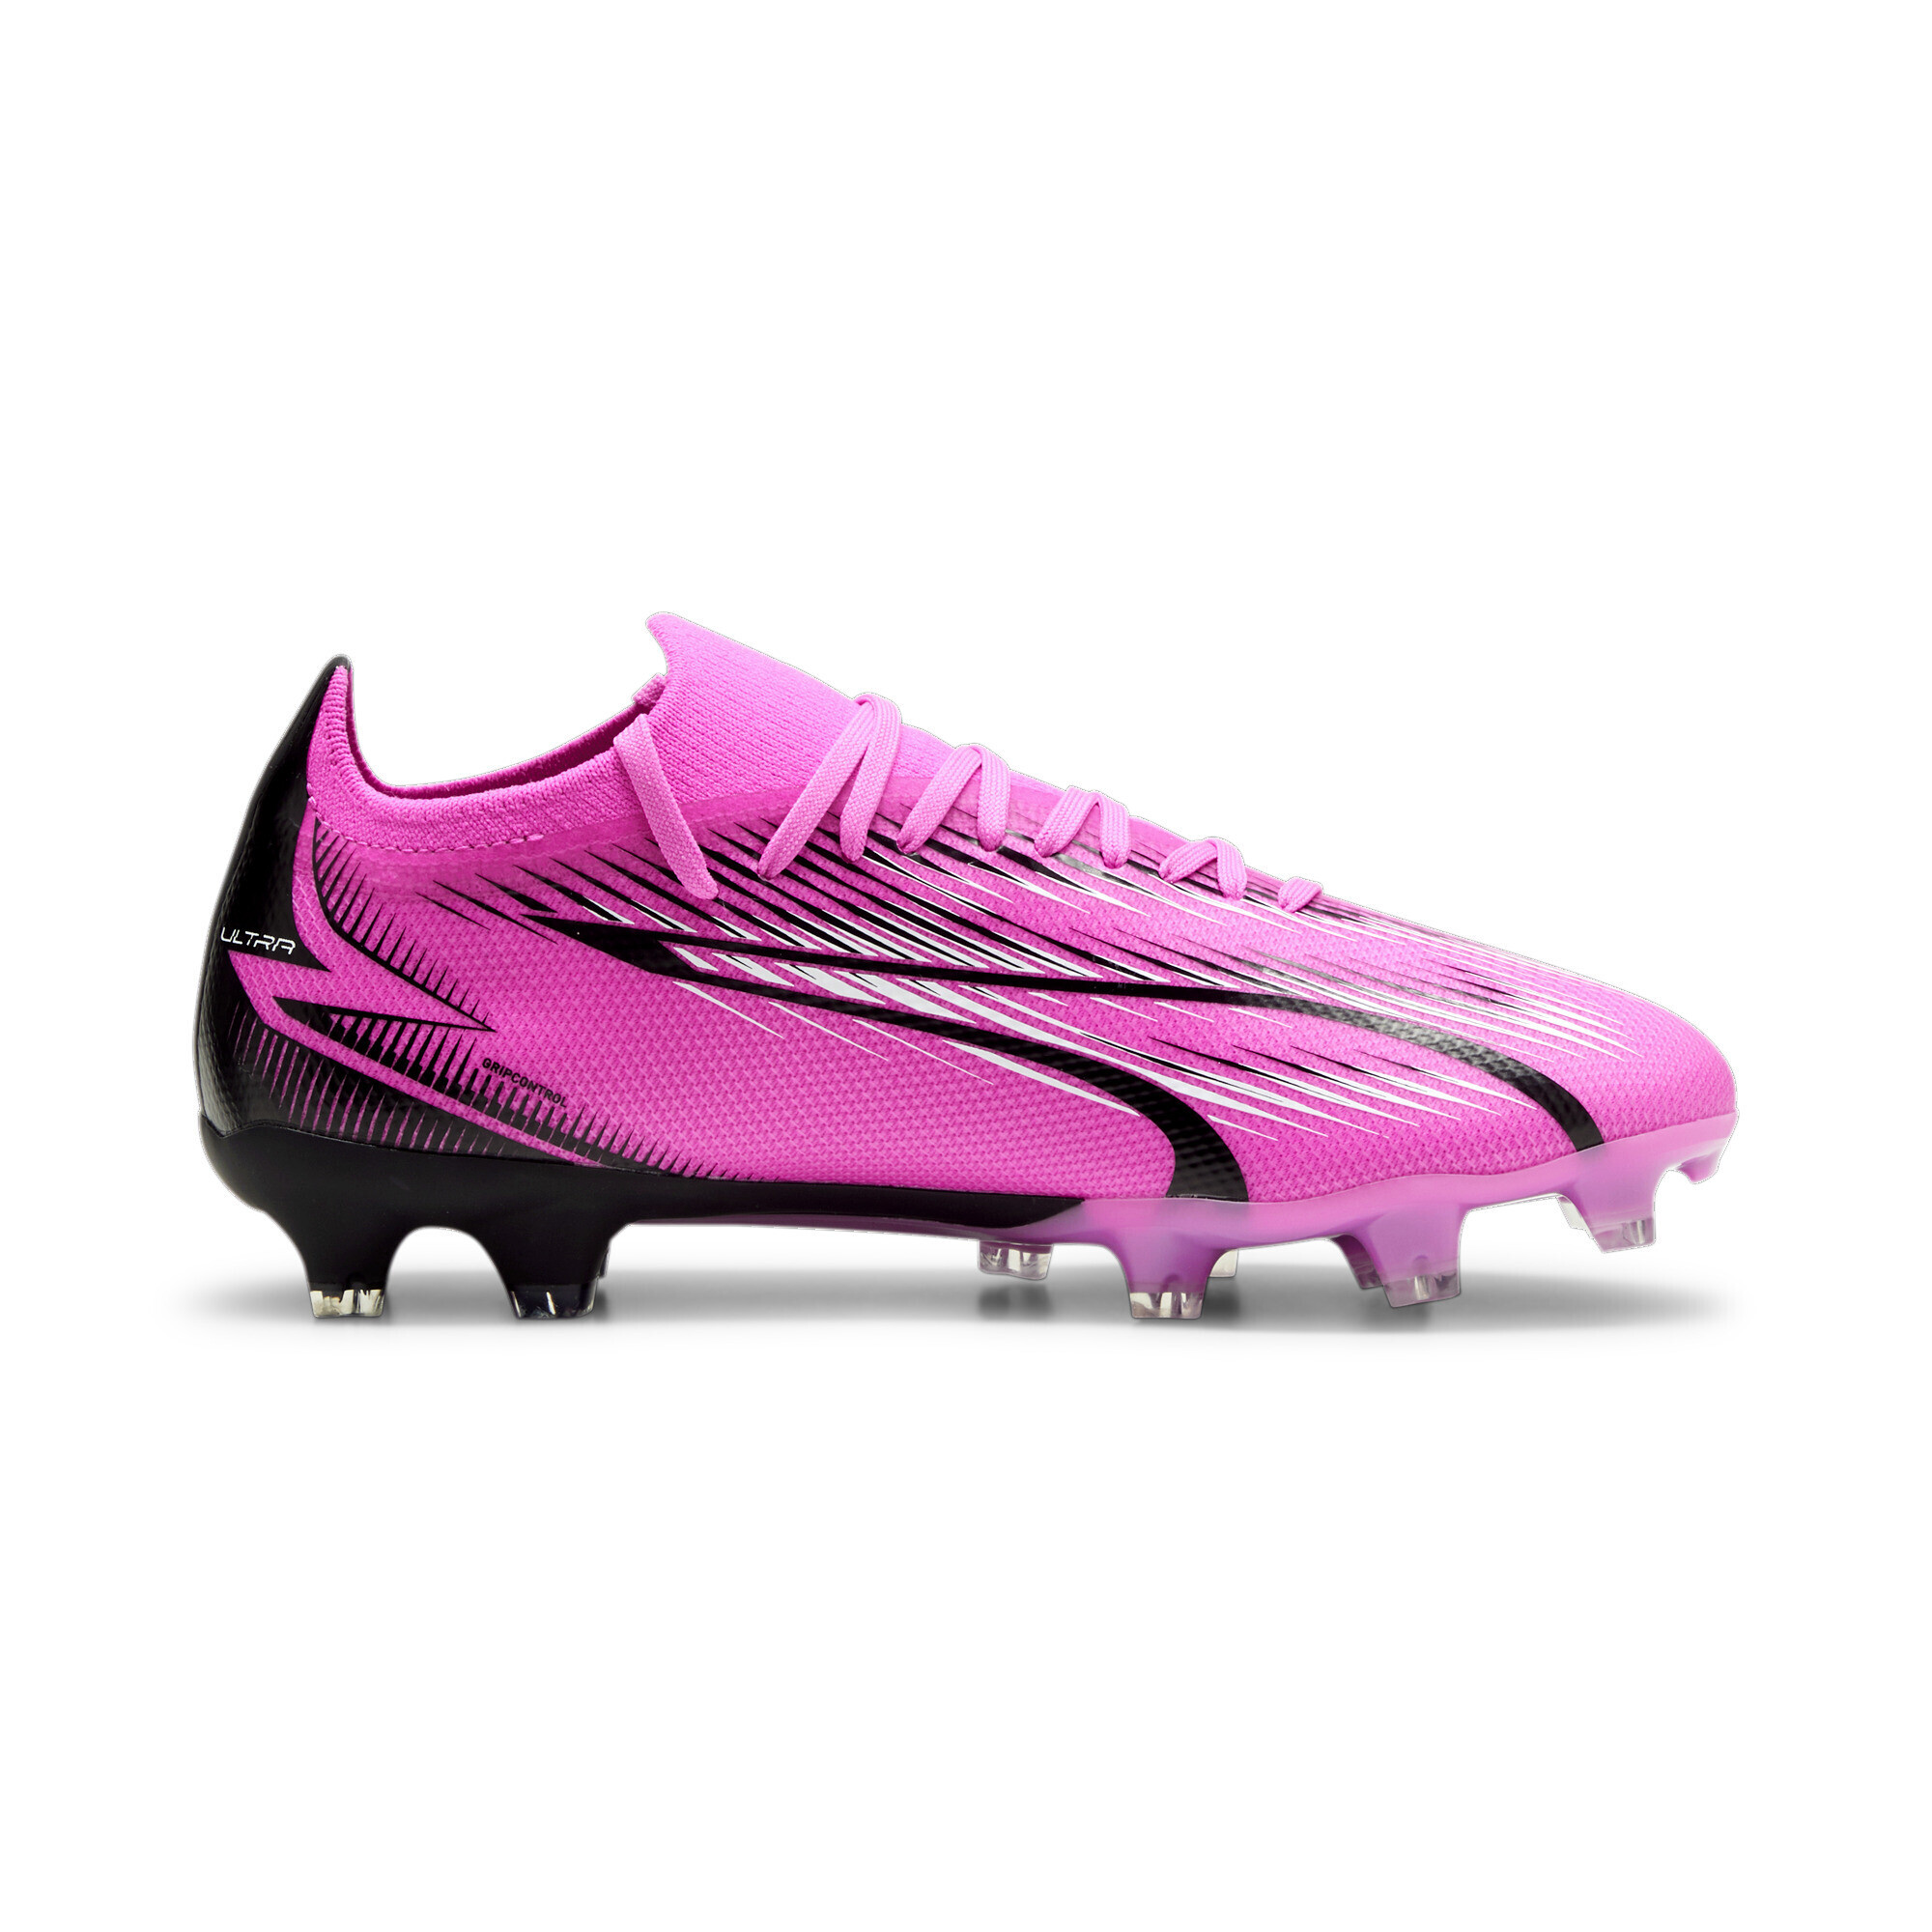 Women's PUMA ULTRA MATCH FG/AG Football Boots In Pink, Size EU 38